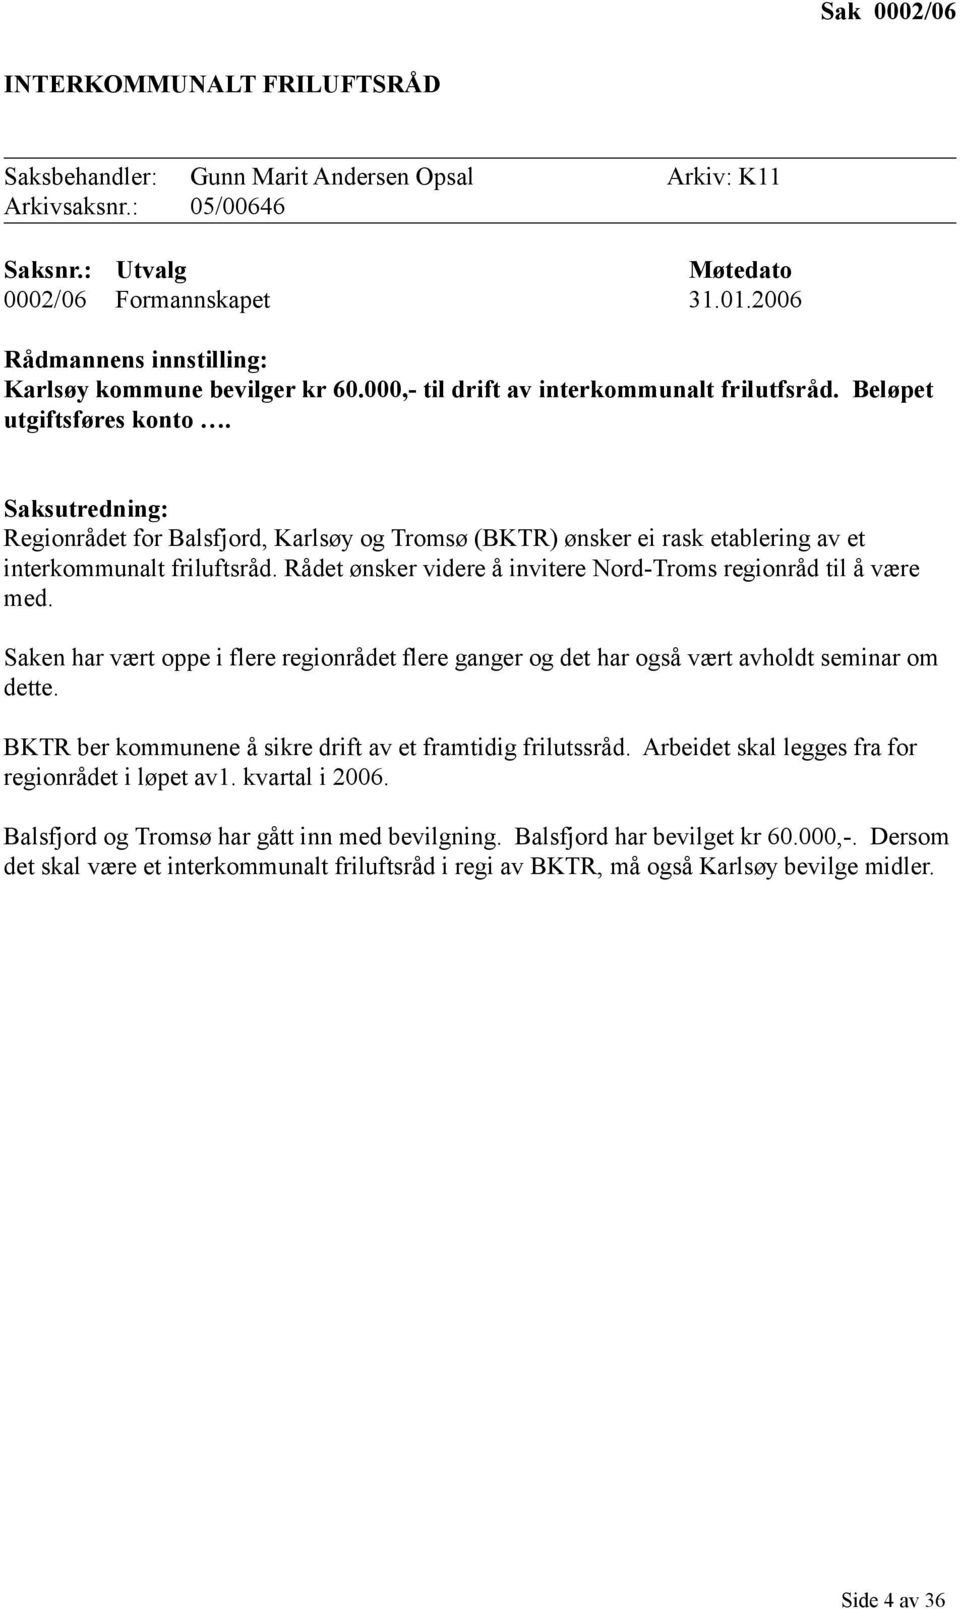 Saksutredning: Regionrådet for Balsfjord, Karlsøy og Tromsø (BKTR) ønsker ei rask etablering av et interkommunalt friluftsråd. Rådet ønsker videre å invitere Nord-Troms regionråd til å være med.